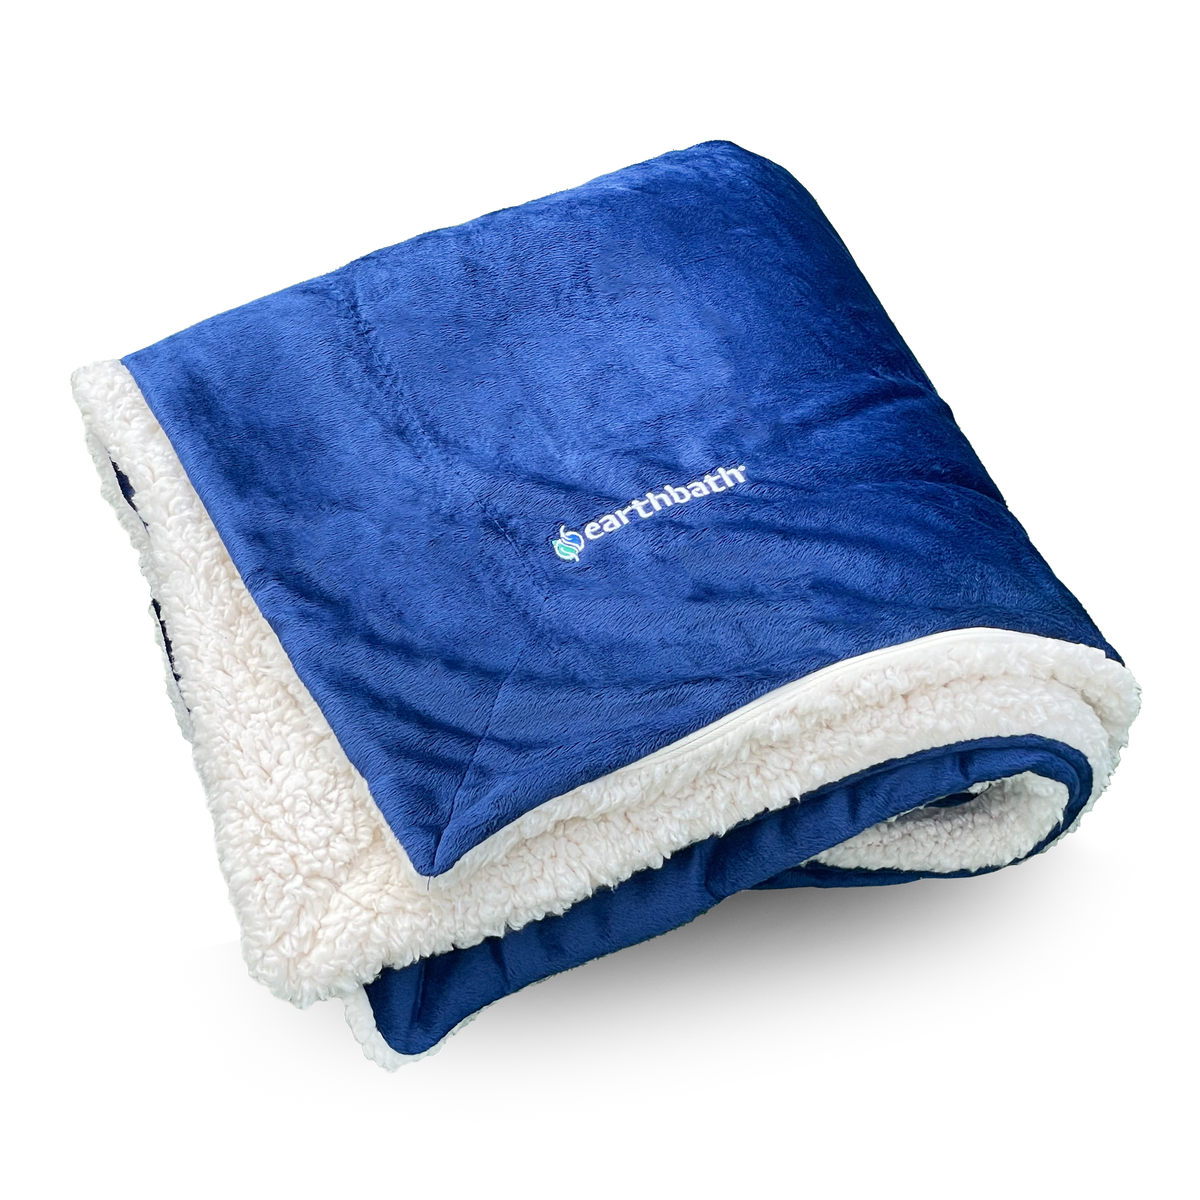 earthbath® Cozy Fleece Blanket